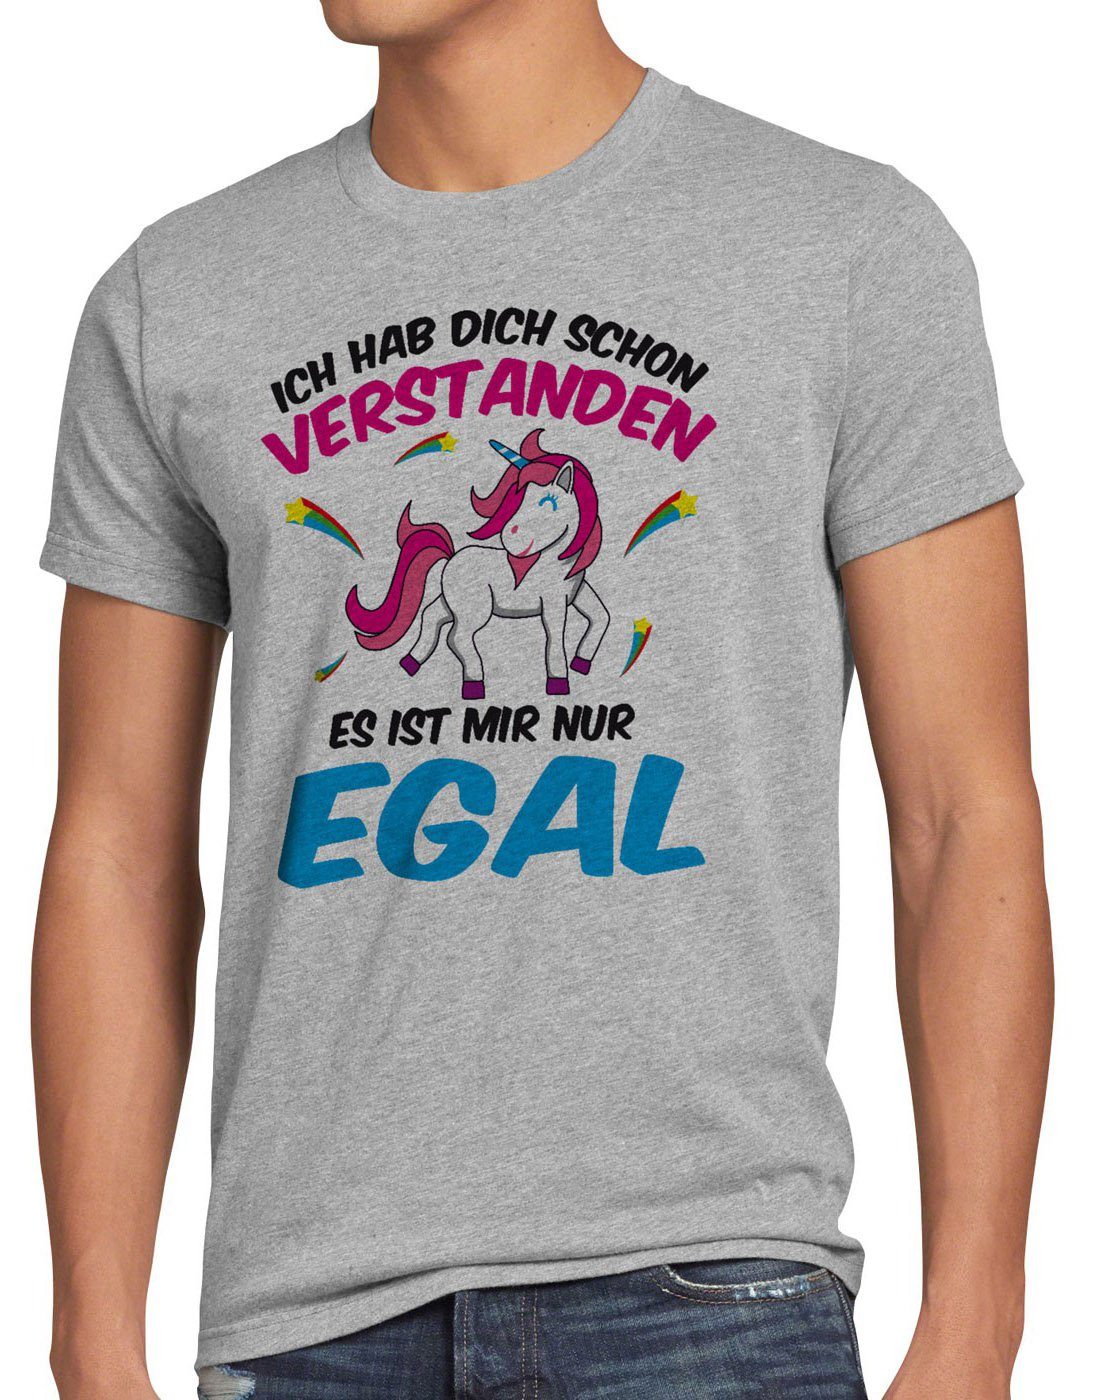 style3 Print-Shirt Herren T-Shirt Ich hab dich schon verstanden nur egal Einhorn Unicorn Fun Spruch grau meliert